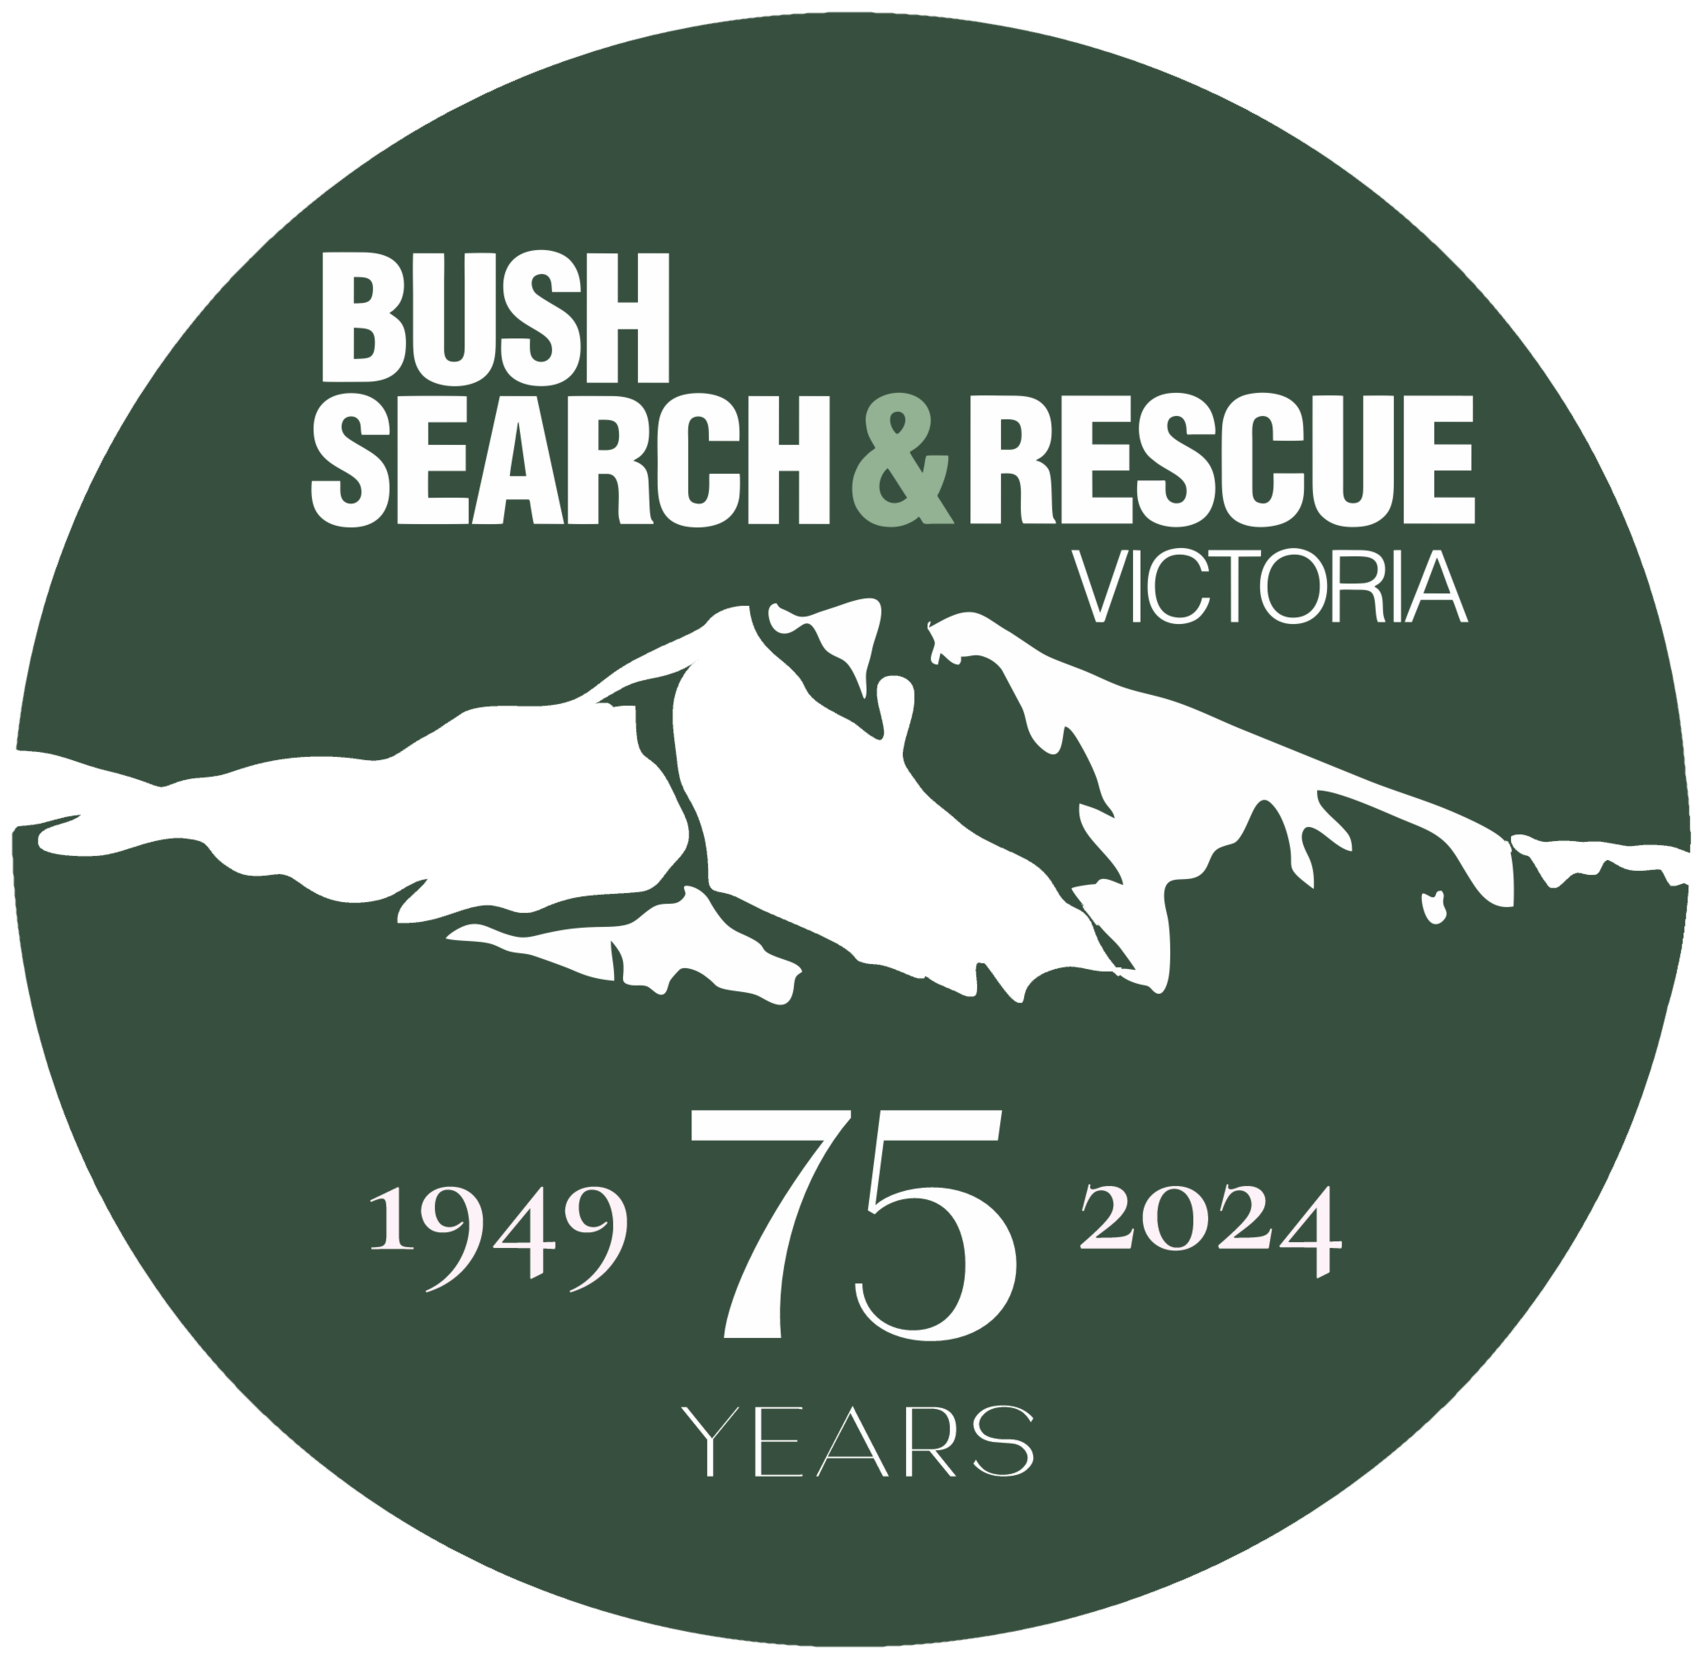 Bush Search and Rescue Victoria